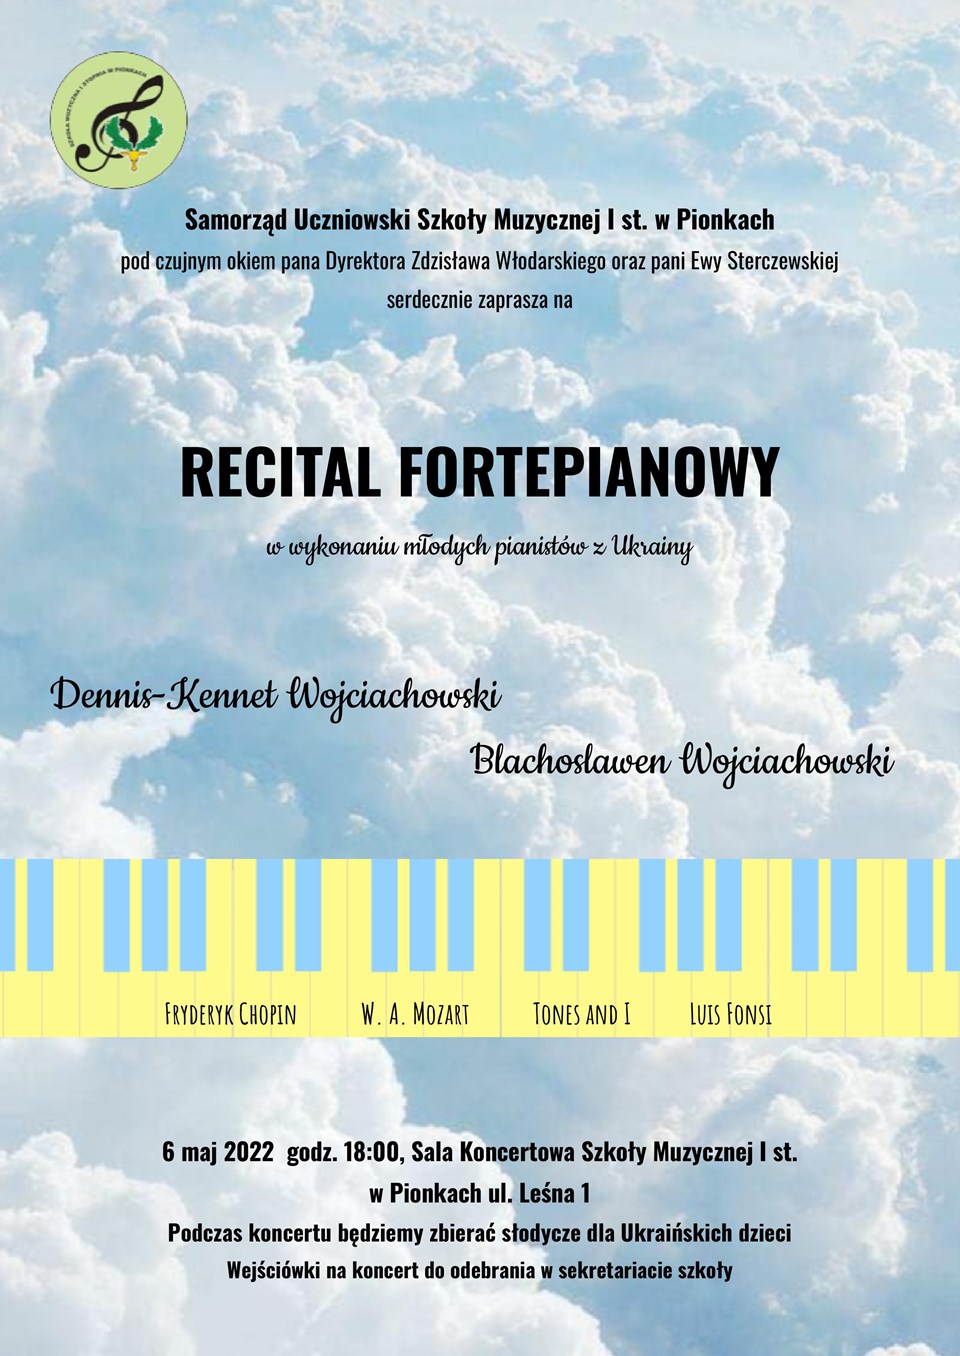 Recital fortepianowy w wykonaniu młodych pianistów z Ukrainy